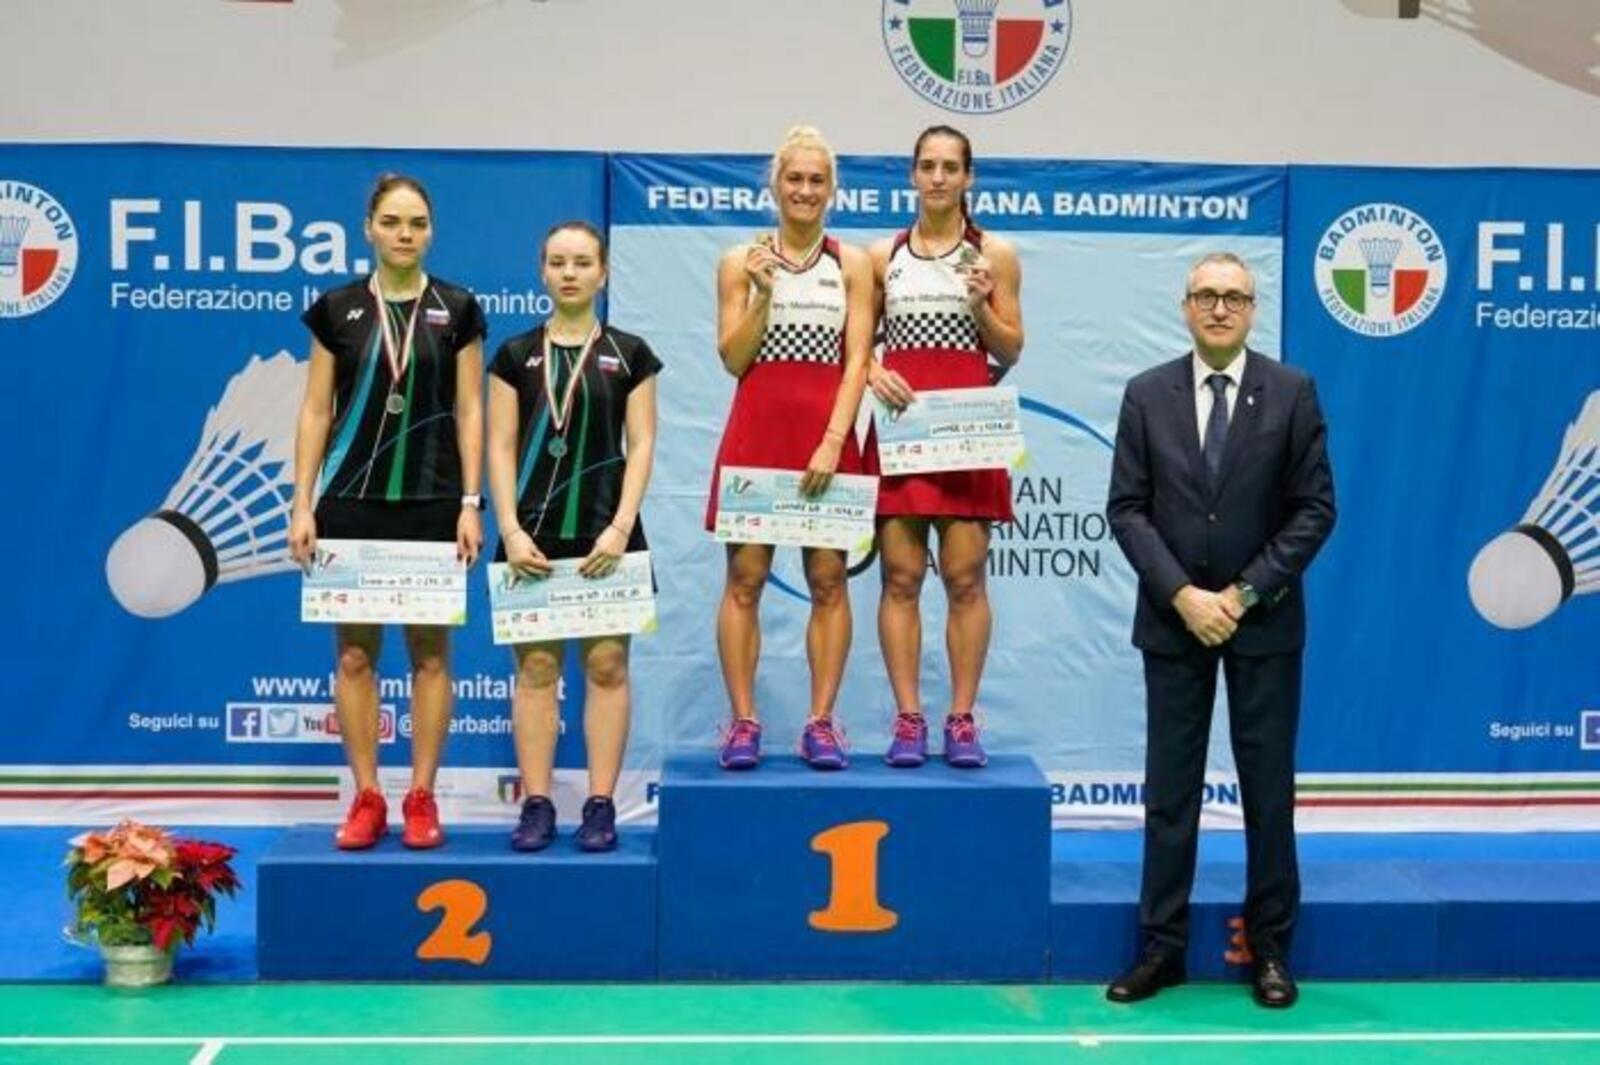 Һулдан: Екатерина Болотова, уңдан Алина Дәүләтова  Фото: Federazione Italiana Badminton